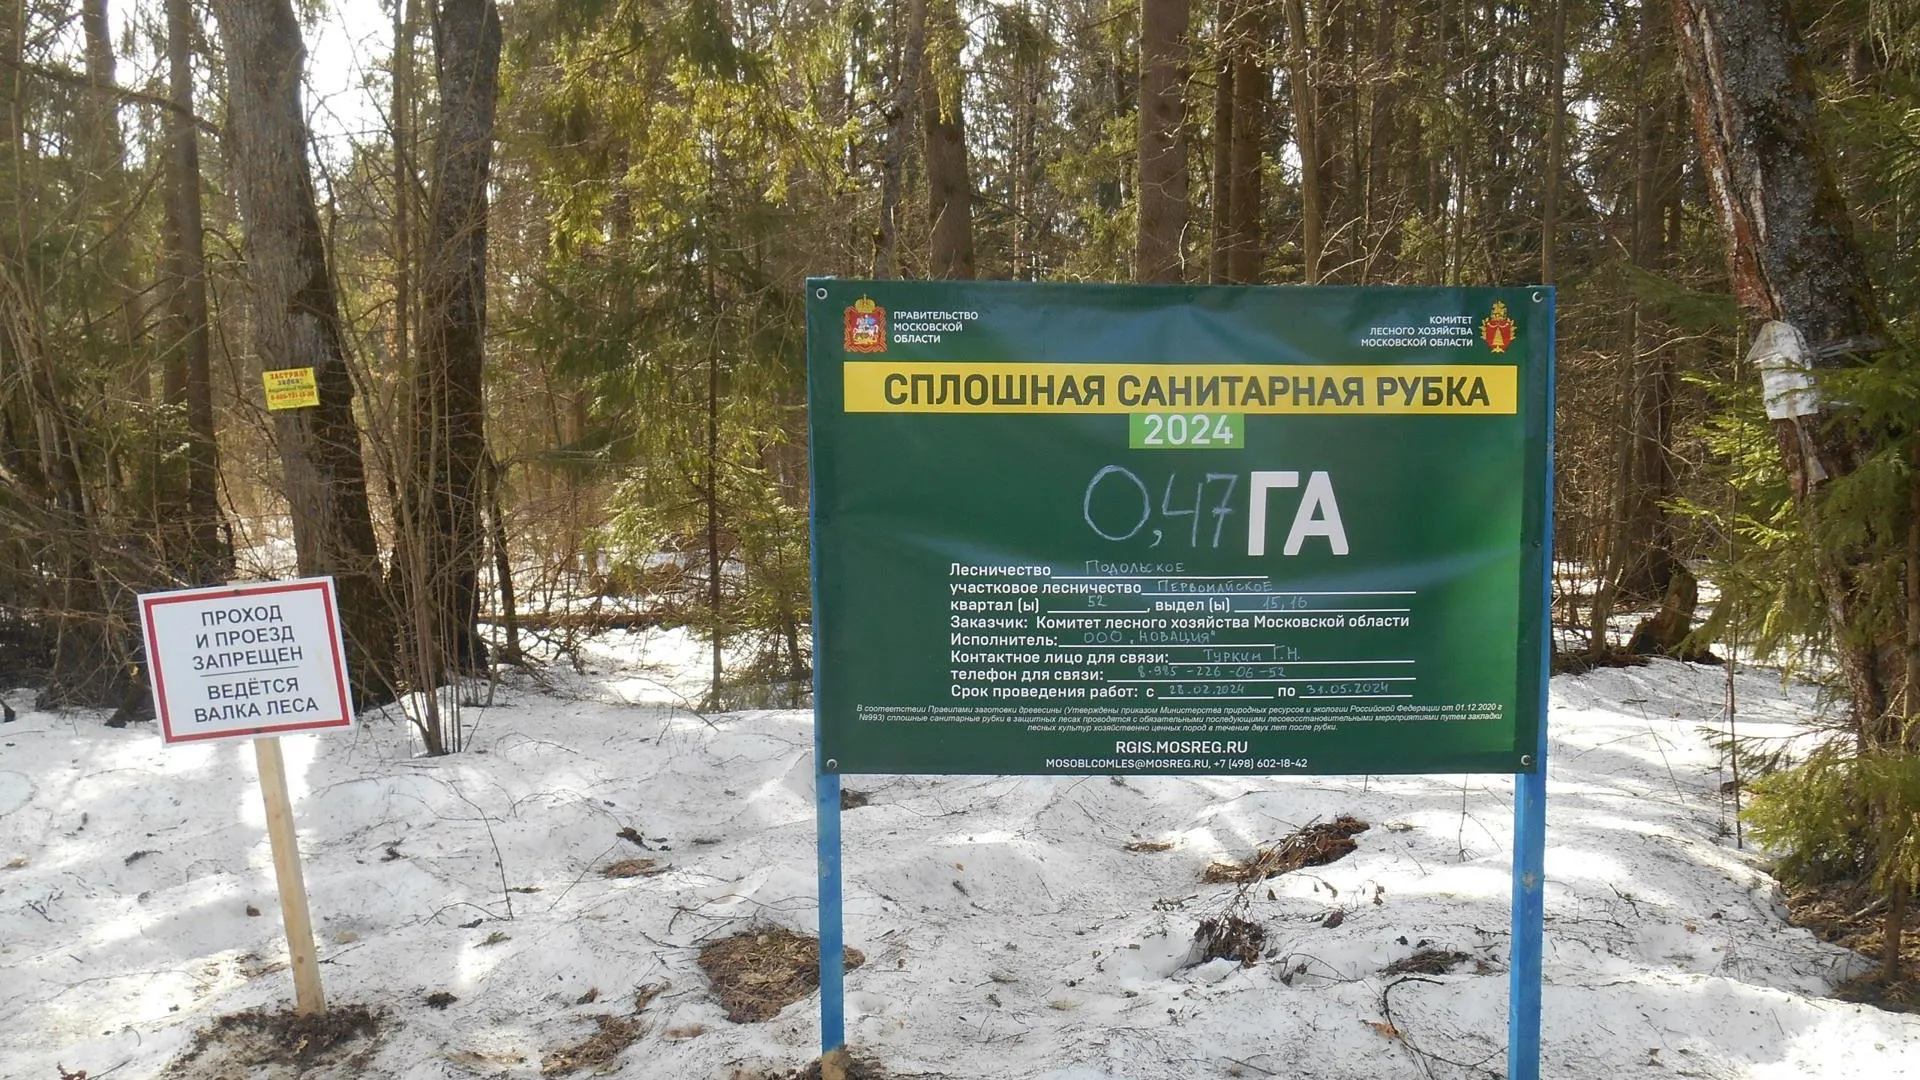 У деревни Скурыгино округа Чехов проходят санитарно-оздоровительные мероприятия